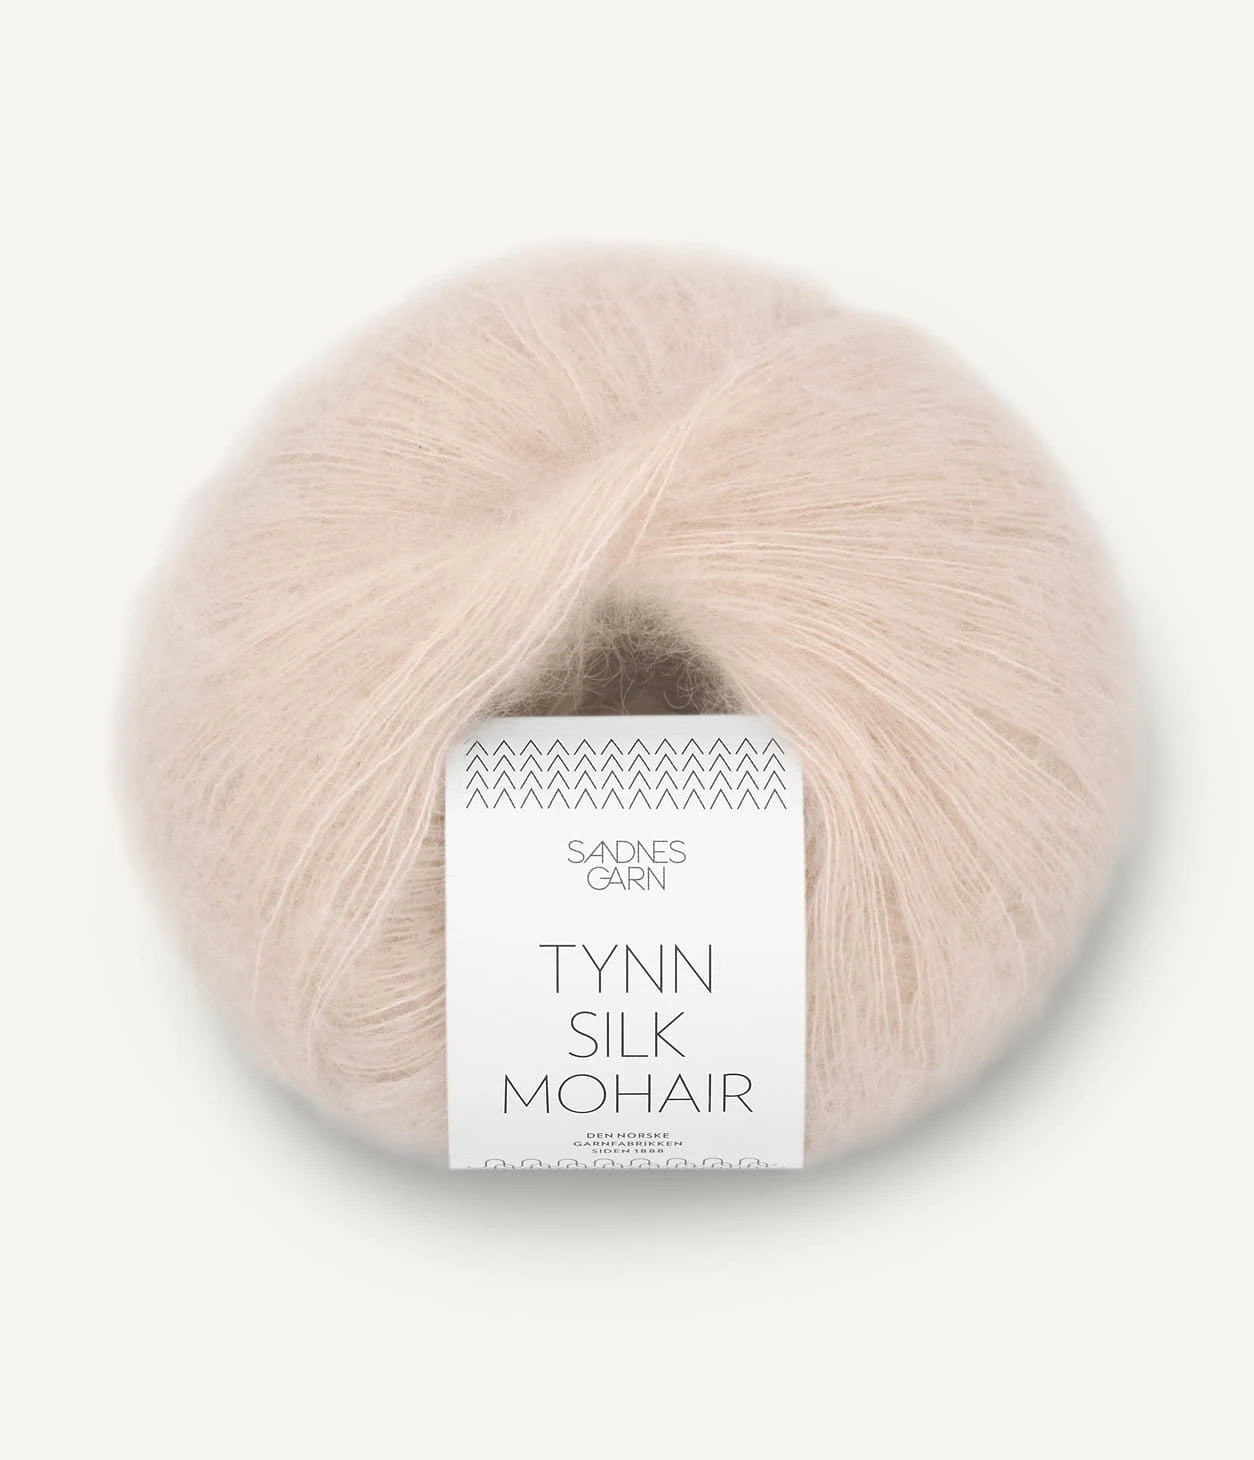 Kuvassa on Sandnes Garn Tynn Silk Mohair -lanka (yarn) värissä Kitt.